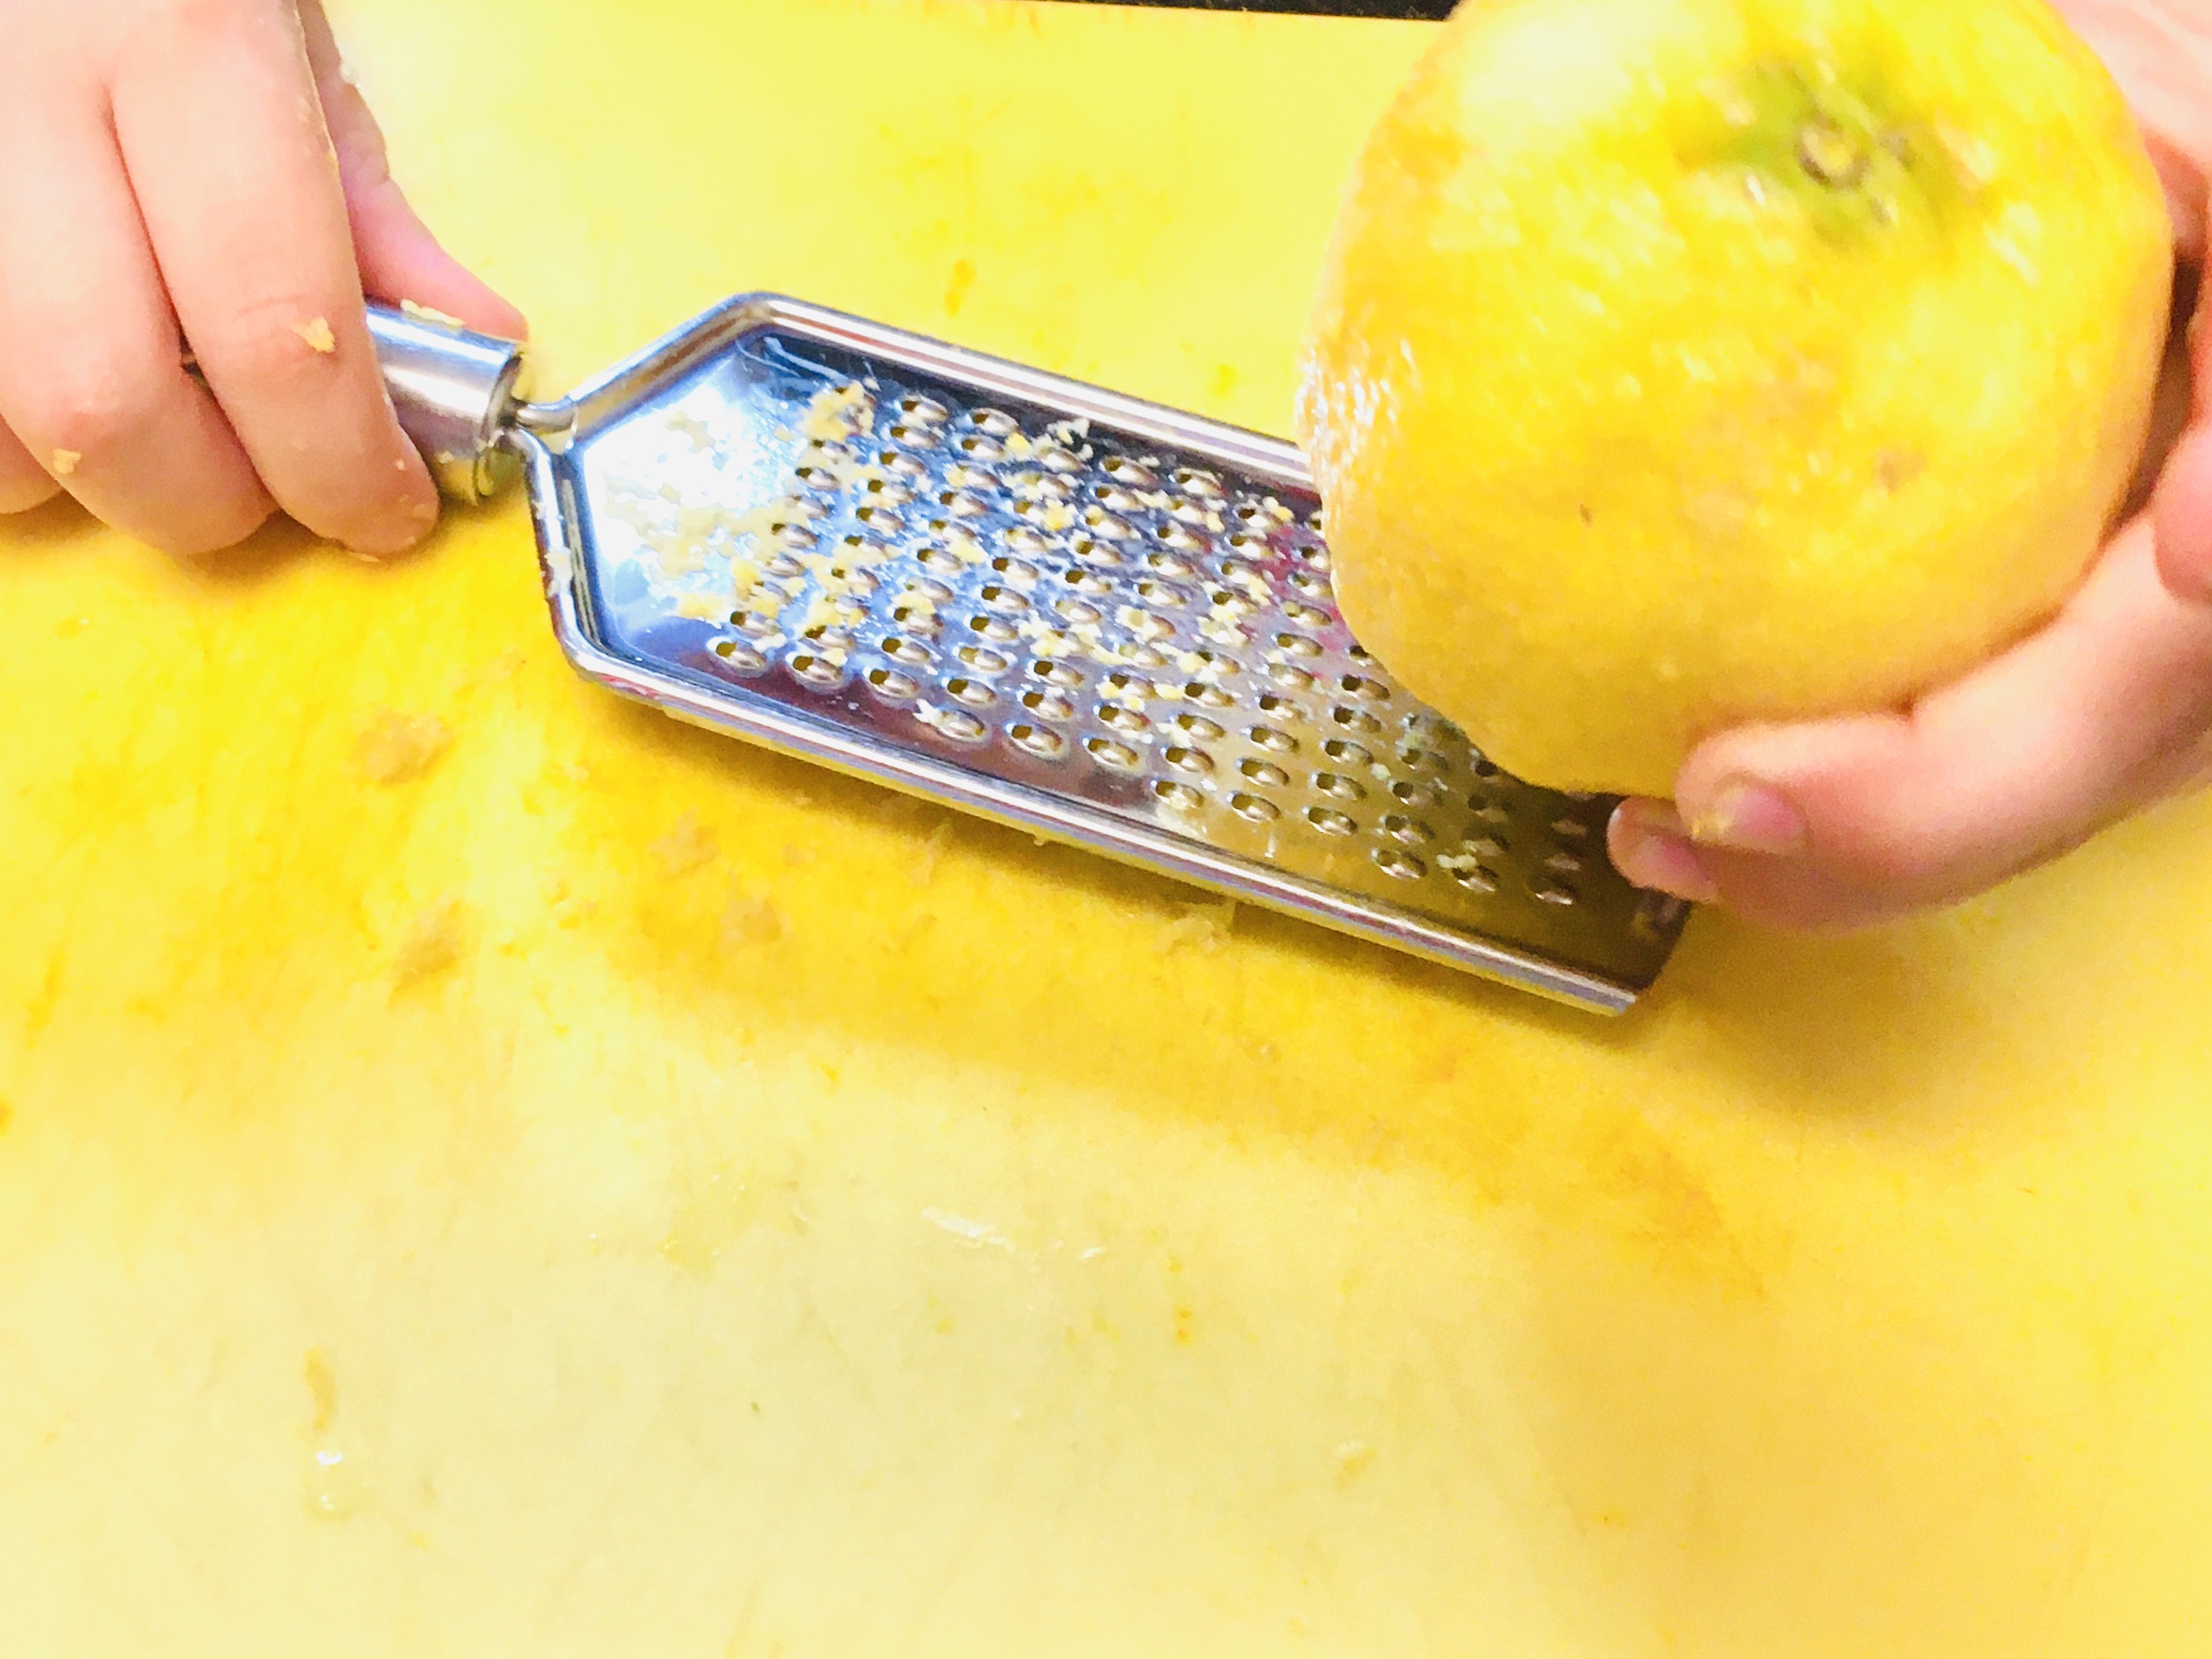 Bild zum Schritt 3 für das Bastel- und DIY-Abenteuer für Kinder: 'Die Zitrone waschen und die Schale abreiben.   Die...'